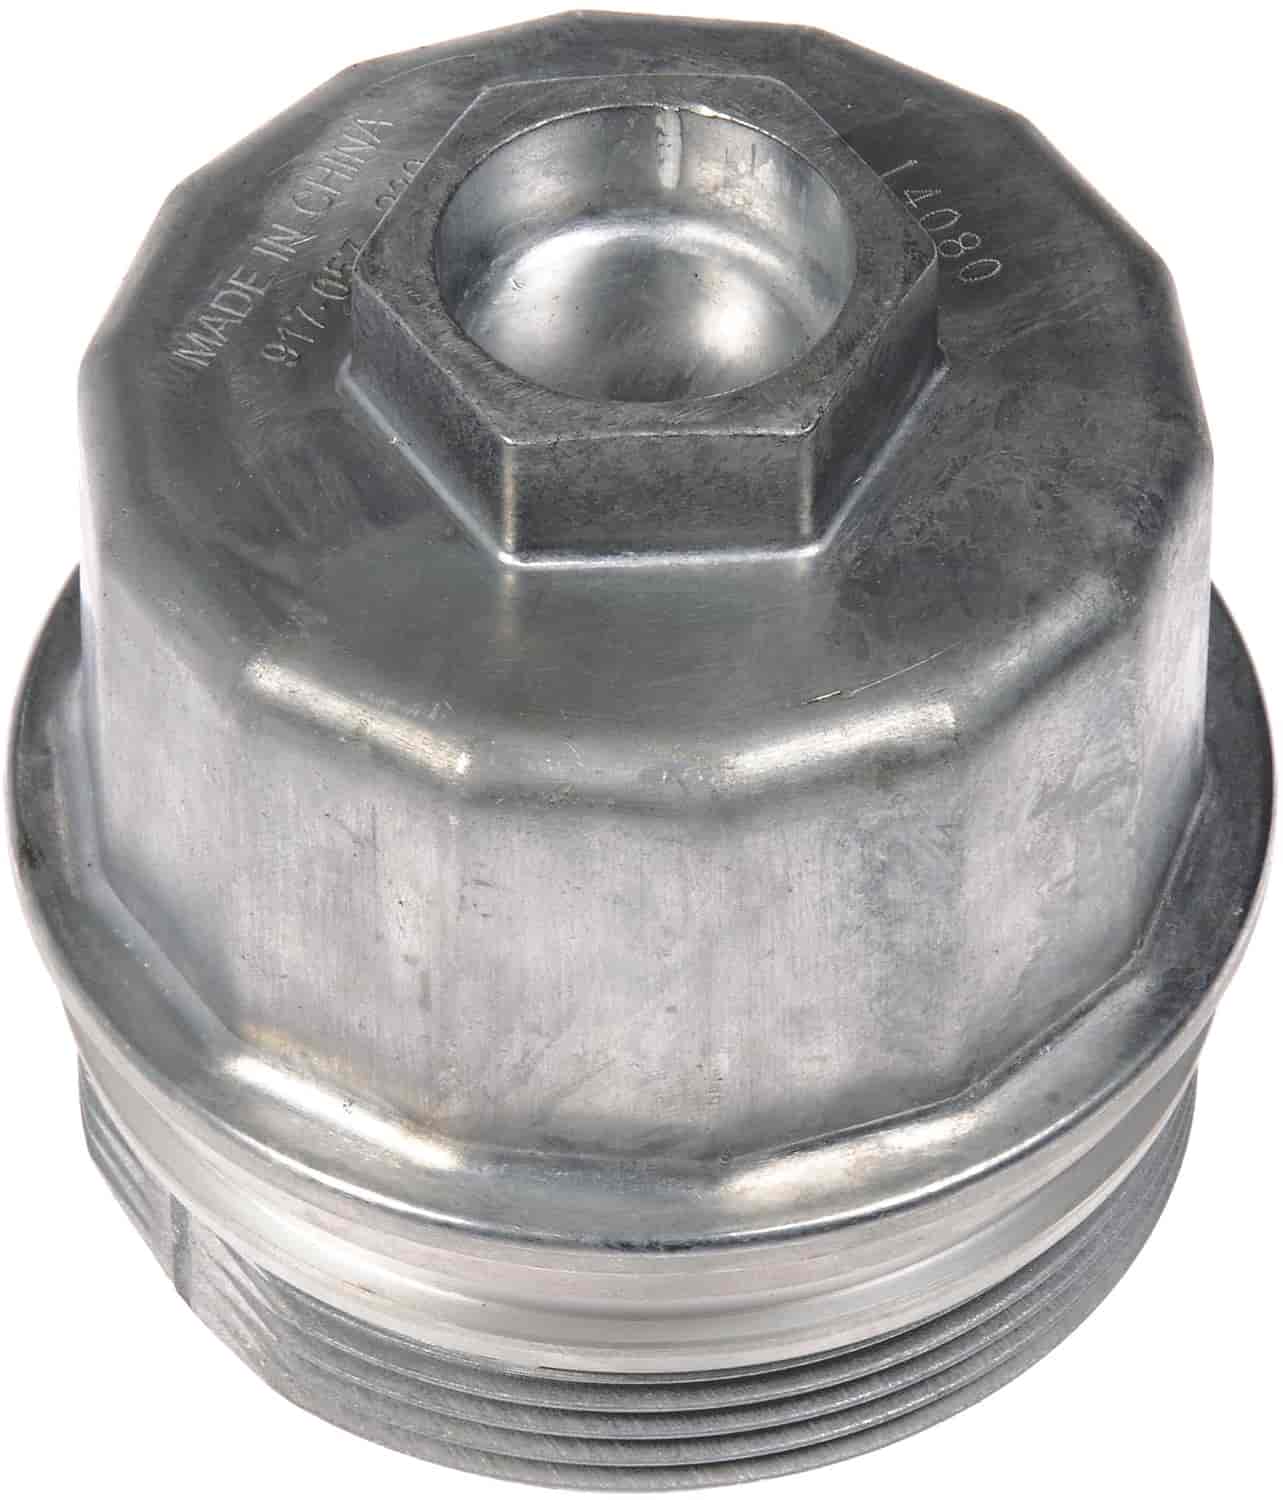 Metal Oil Filter Cap